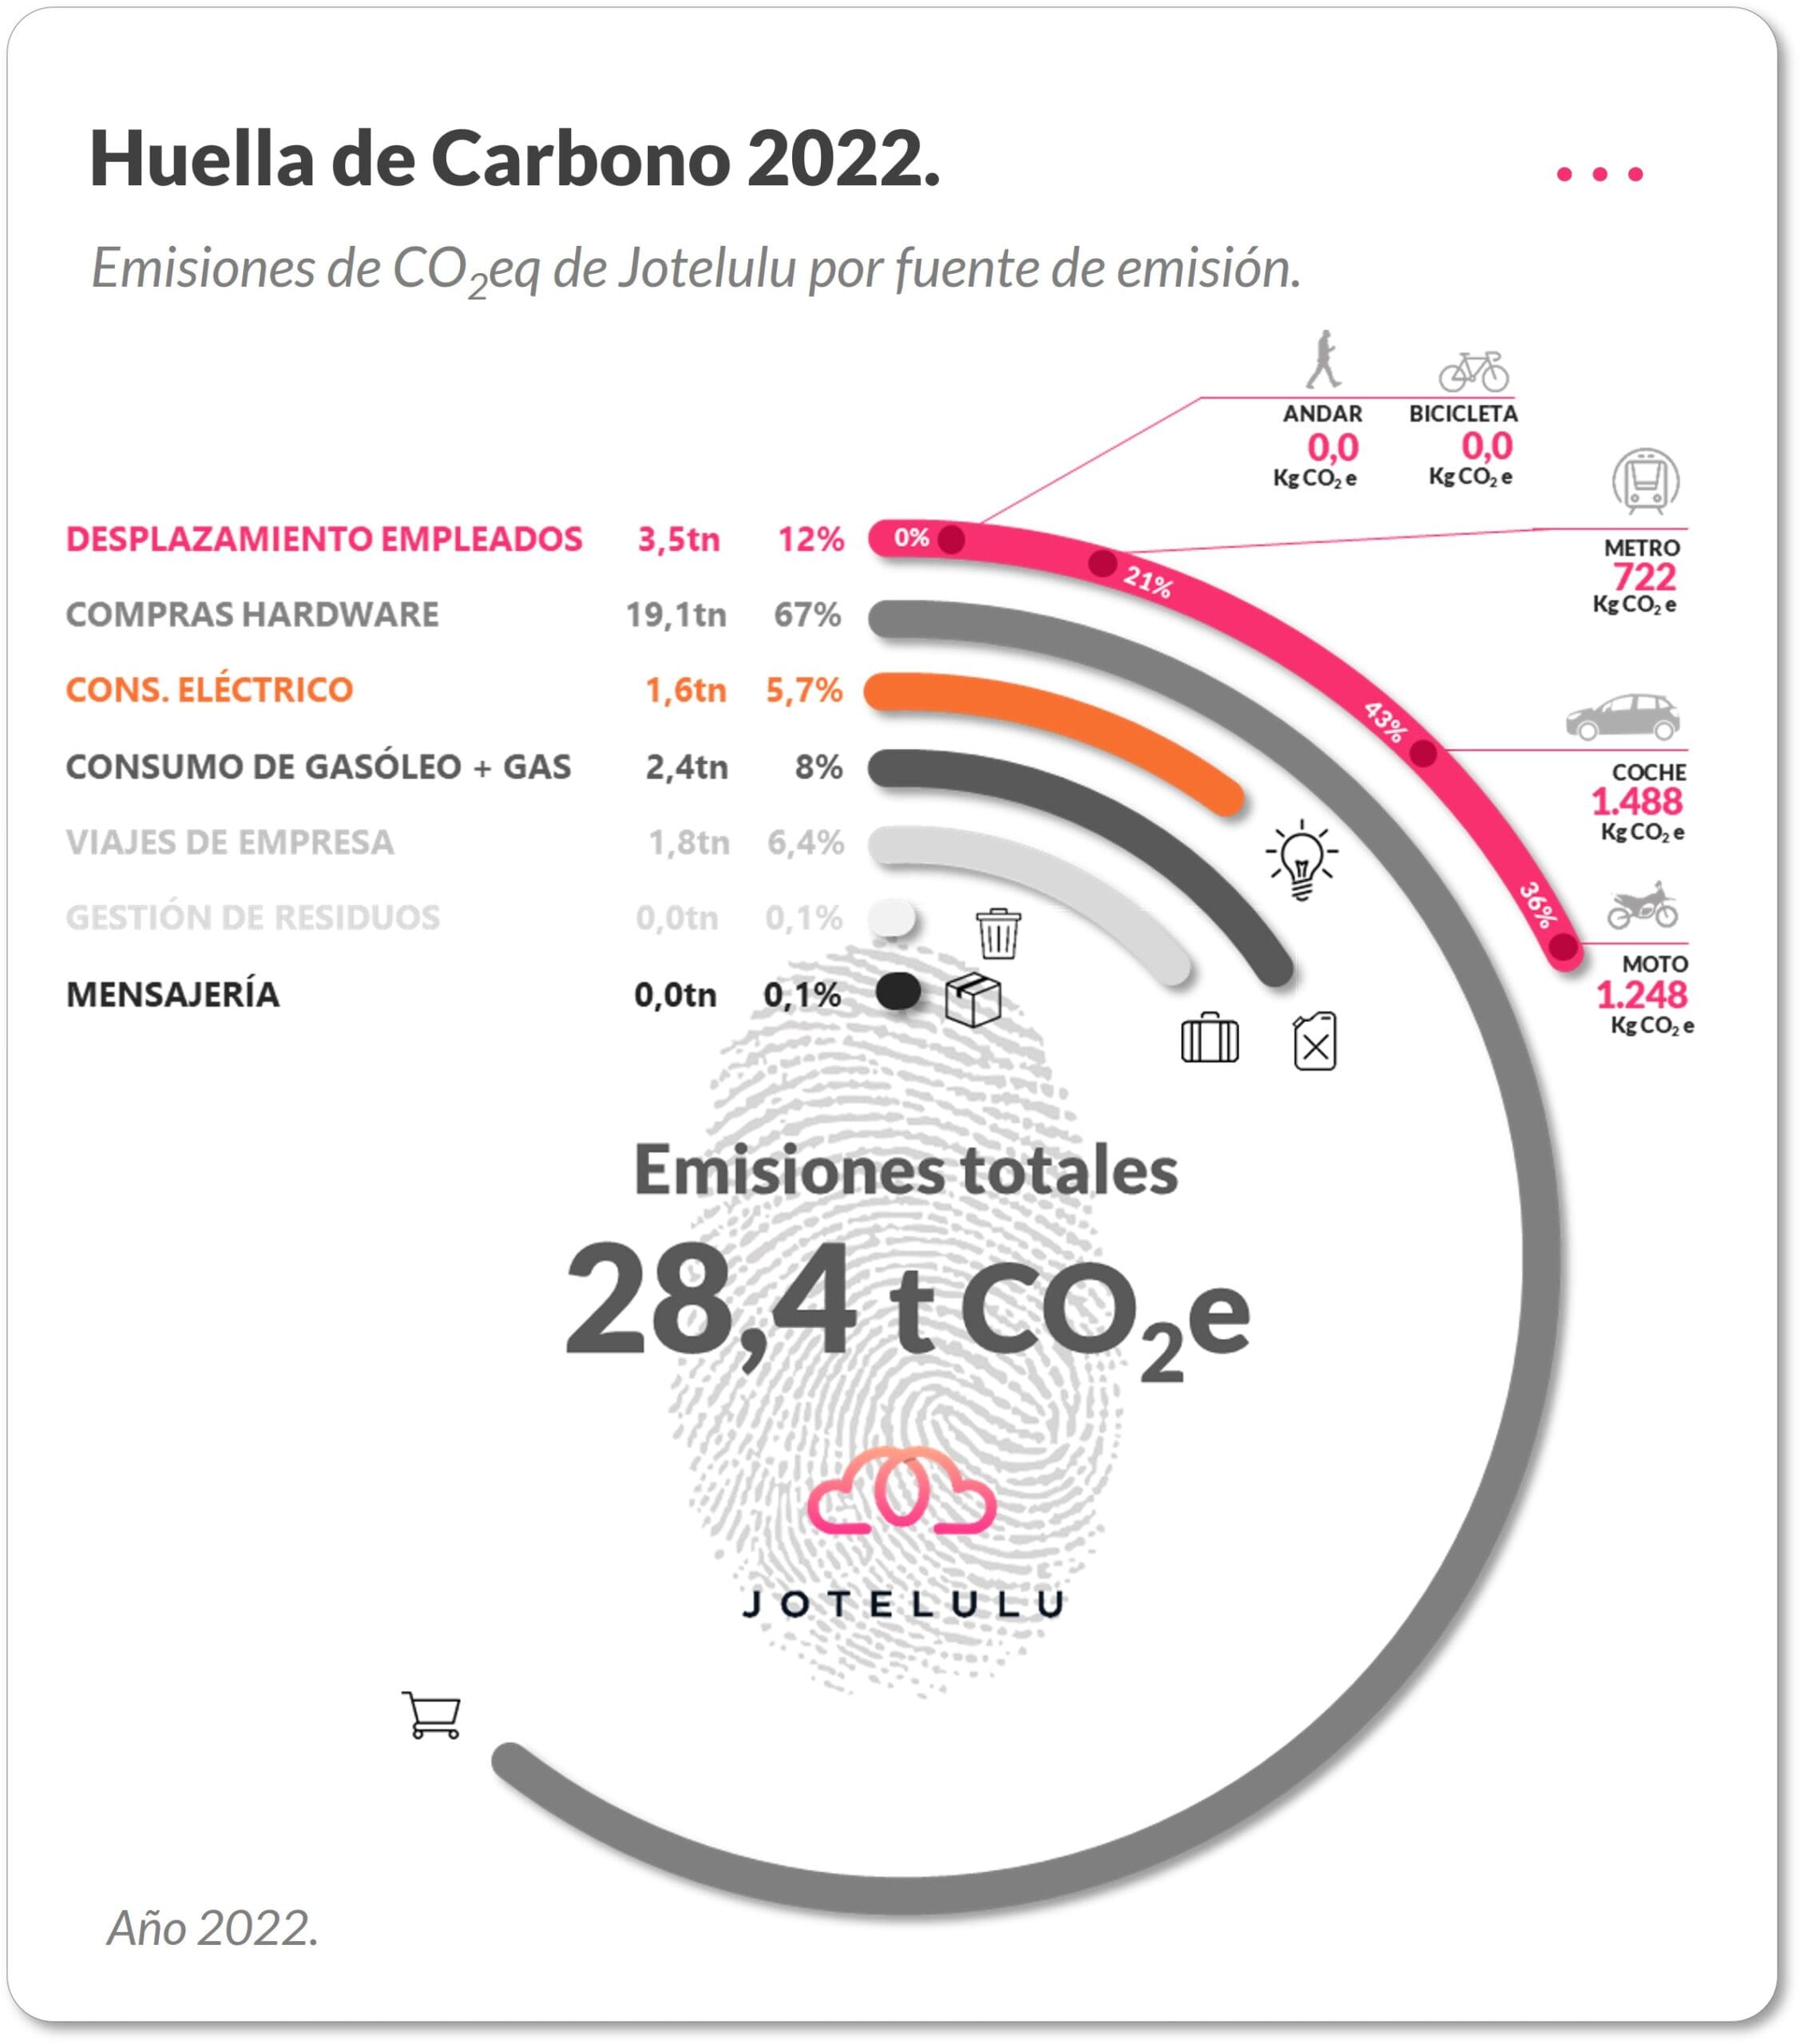 Huella de Carbono de Jotelulu 2022.